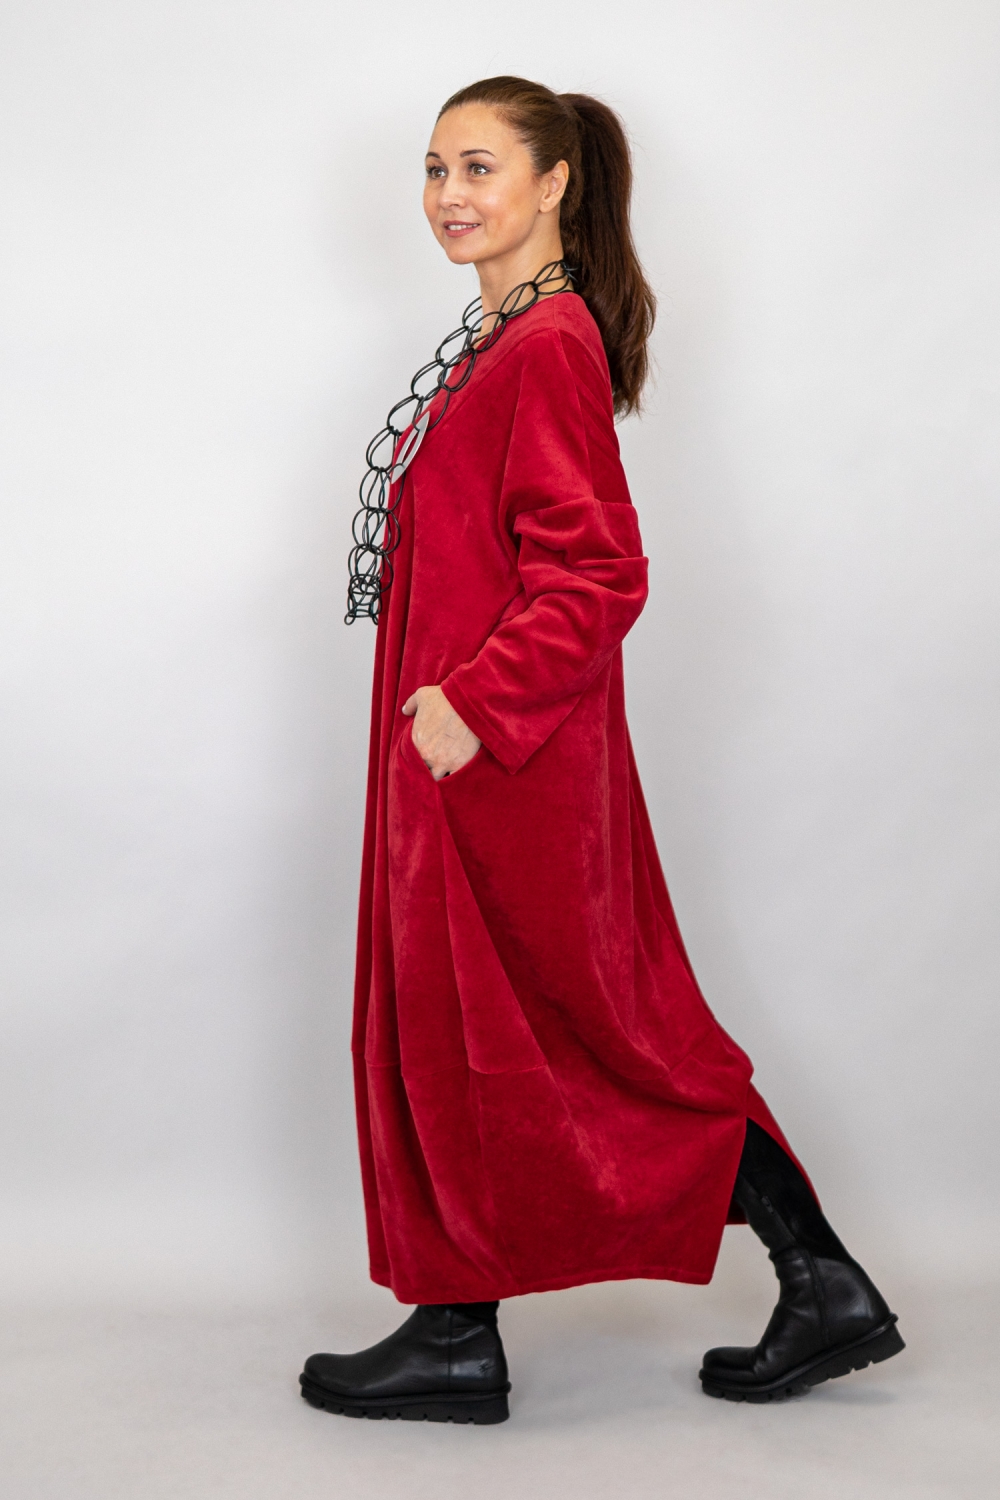 Laurer Kleid in Tulpenform aus Nicky Velours Stoff in rot